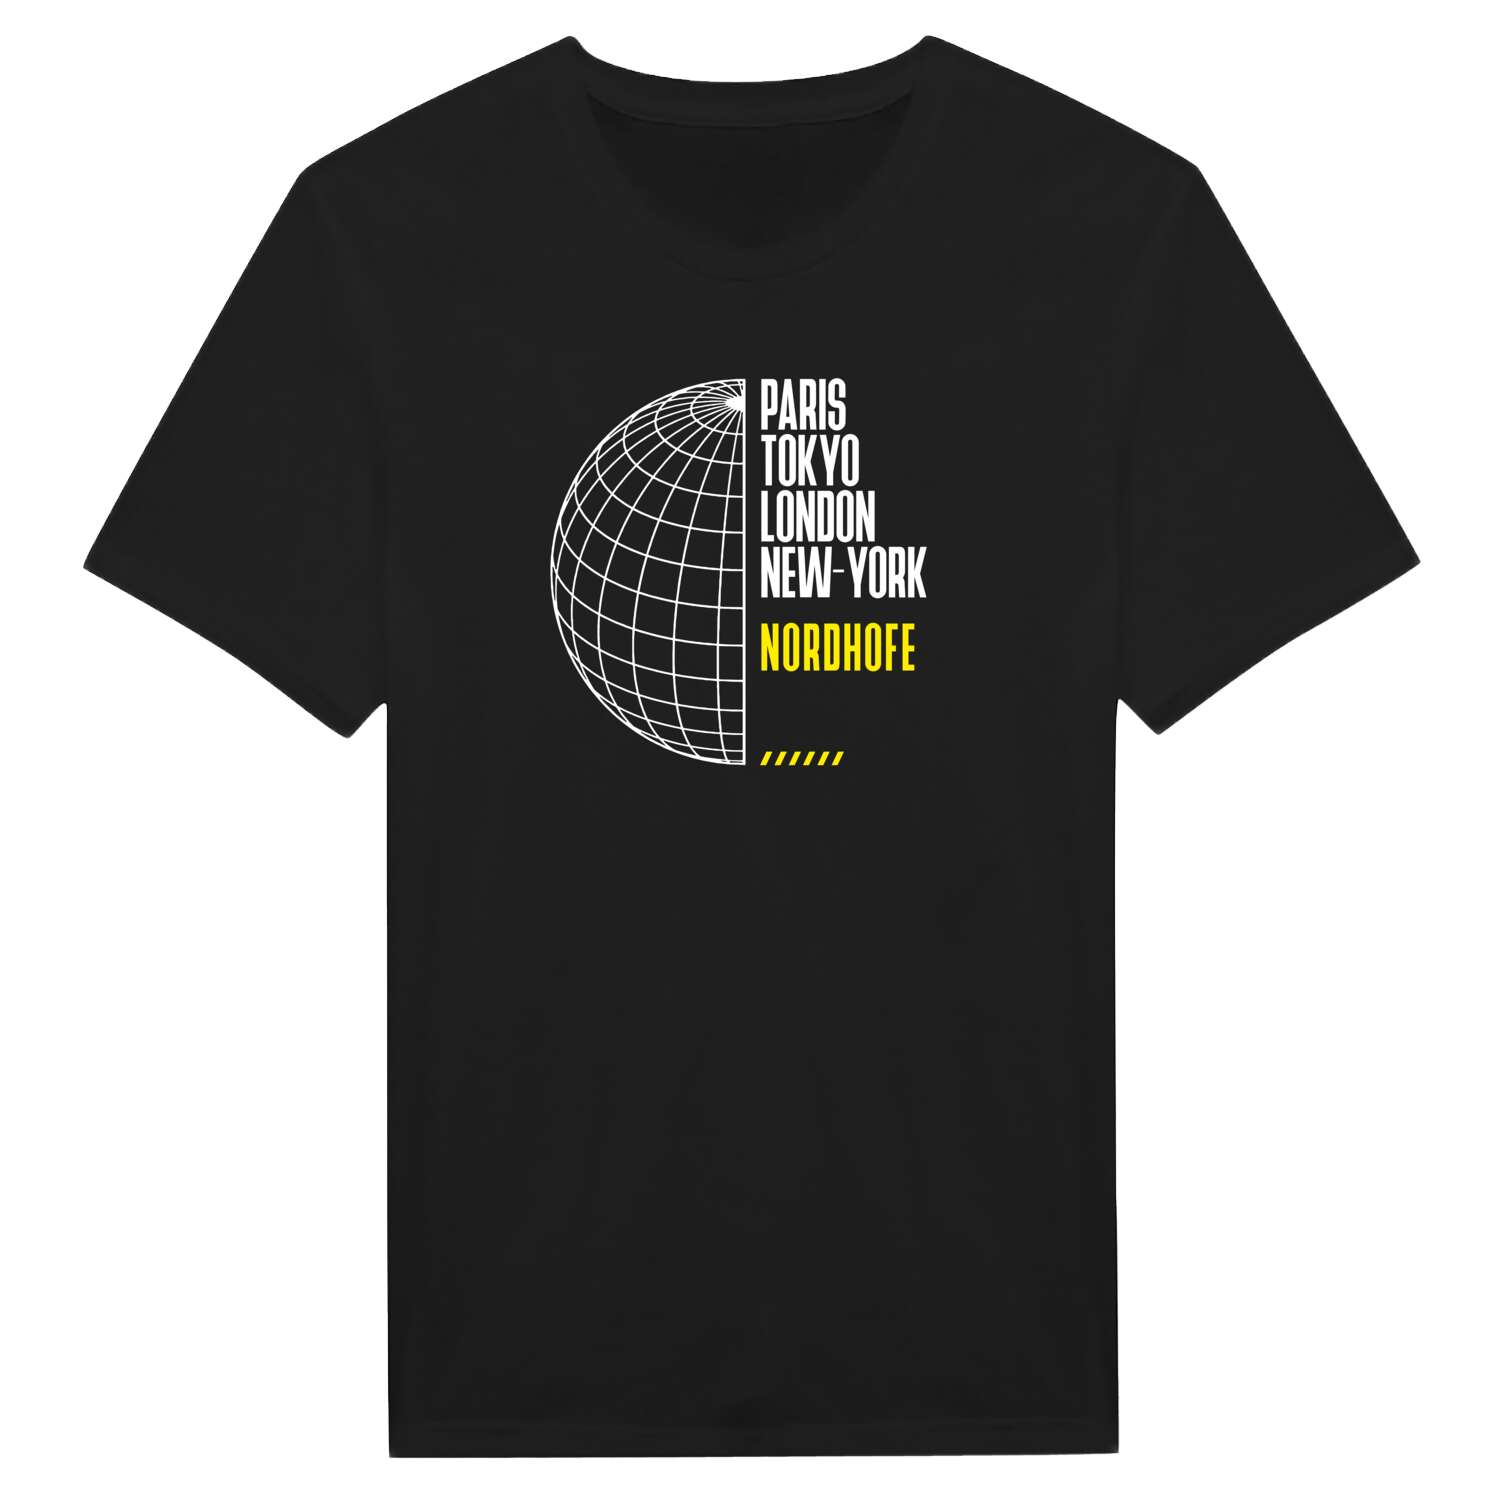 Nordhofe T-Shirt »Paris Tokyo London«